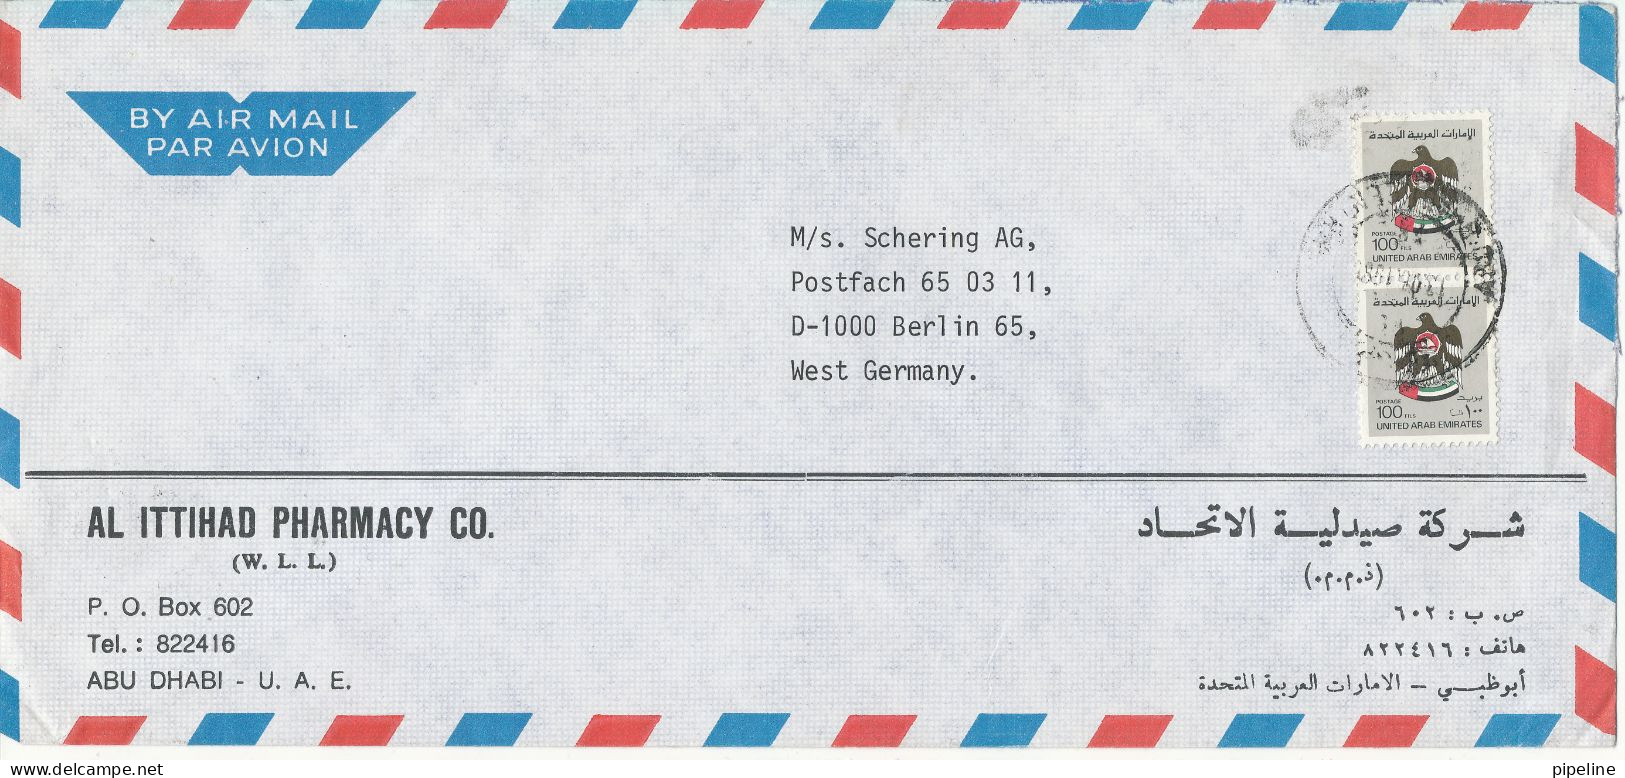 UAE Abu Dhabi Air Mail Cover Sent To Germany 1985 - Abu Dhabi